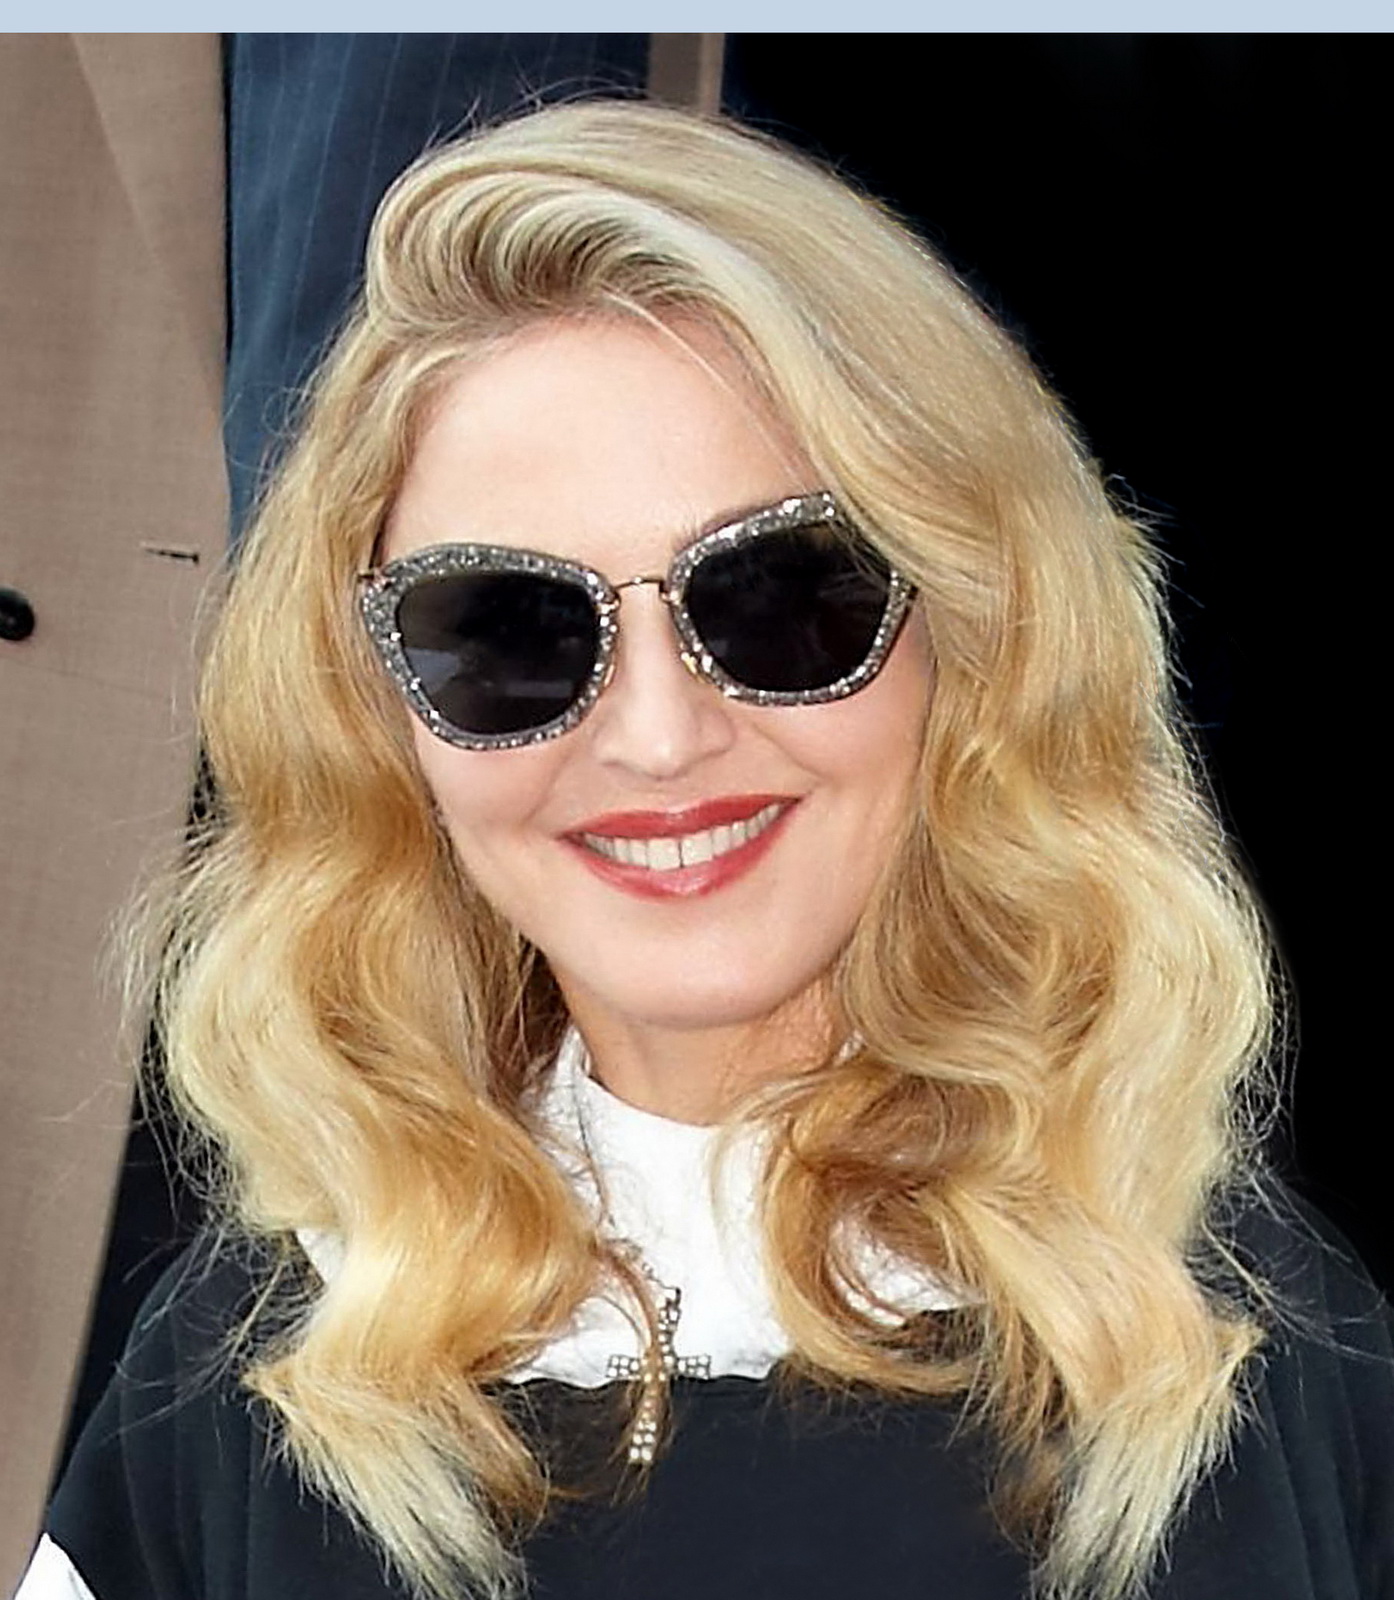 麦当娜·西科尼 (Madonna Louise Veronica Ciccone)戴着MiuMiu黑色太阳镜系列参加威尼斯电影节。